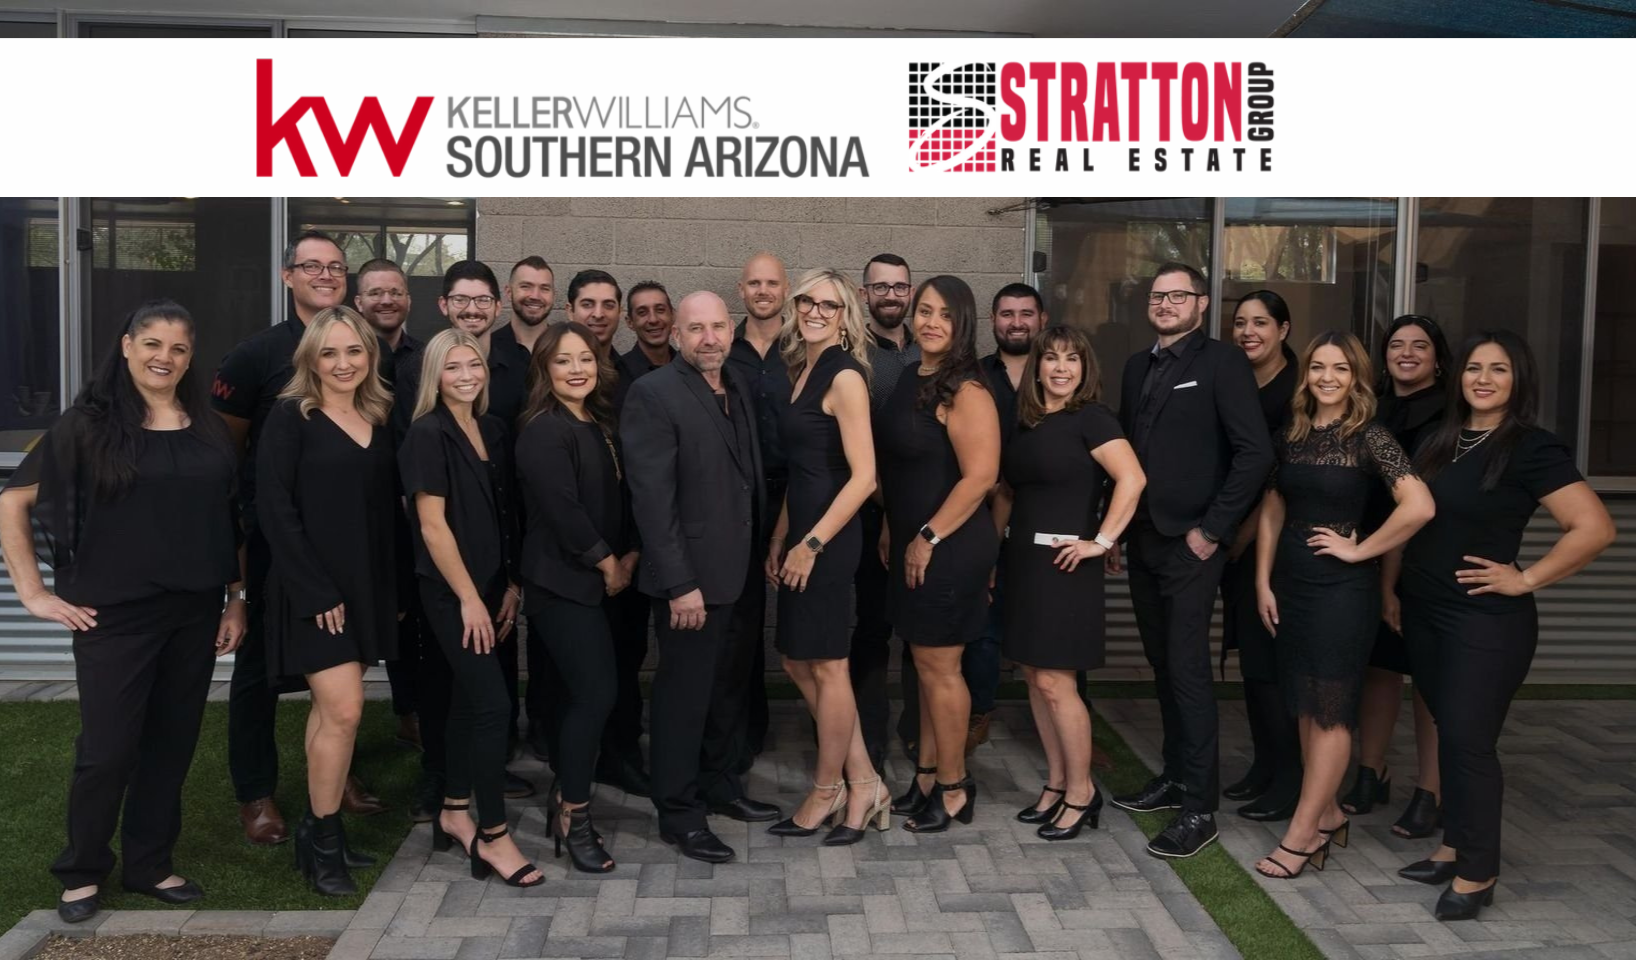 Stratton Group - Keller Williams Southern Arizona